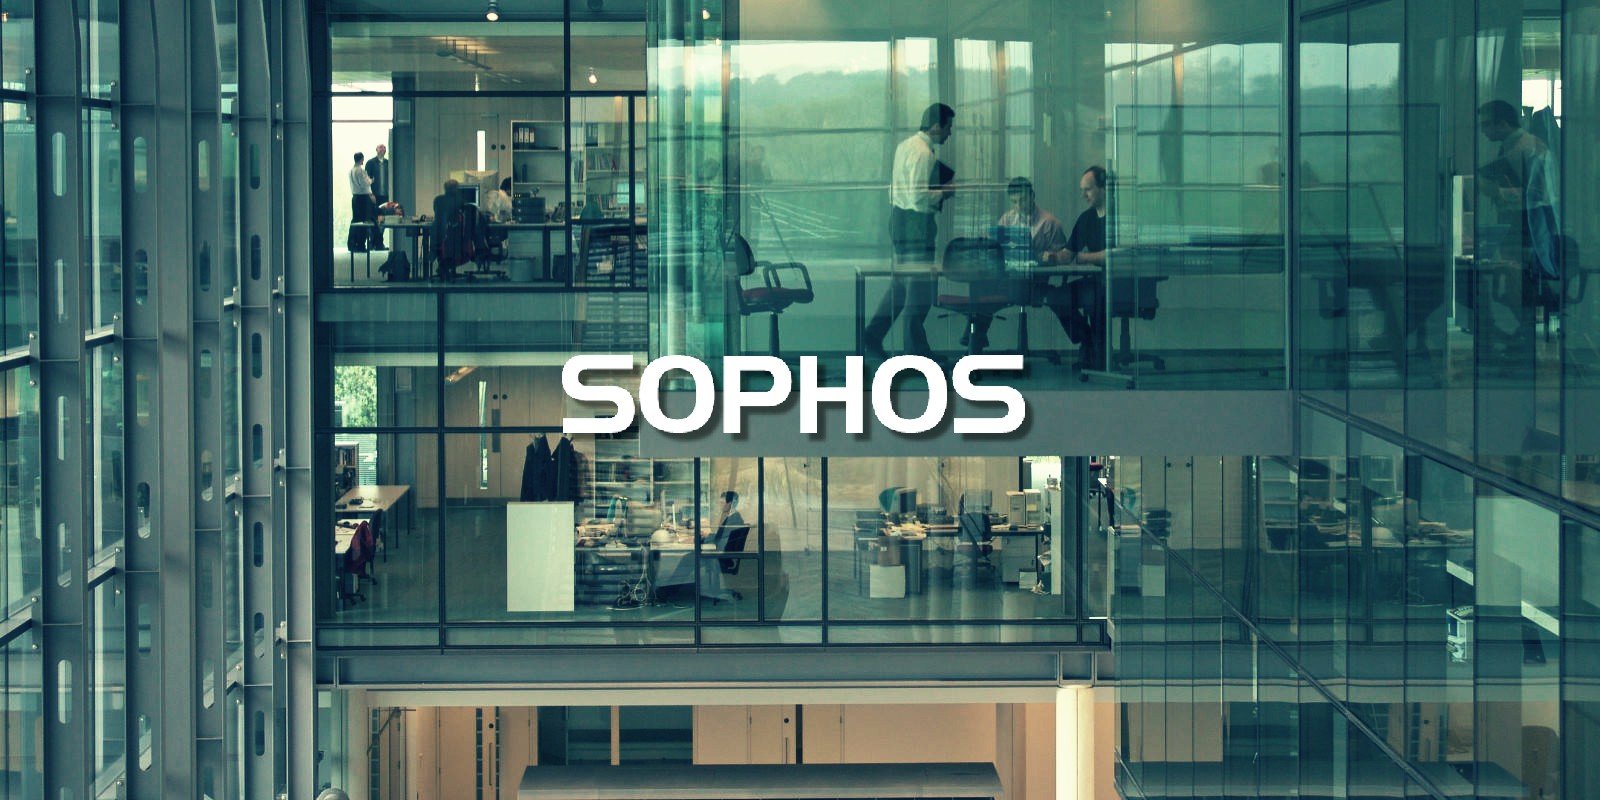 A Sophos alerta os clientes sobre a exposição de informações após violação de segurança